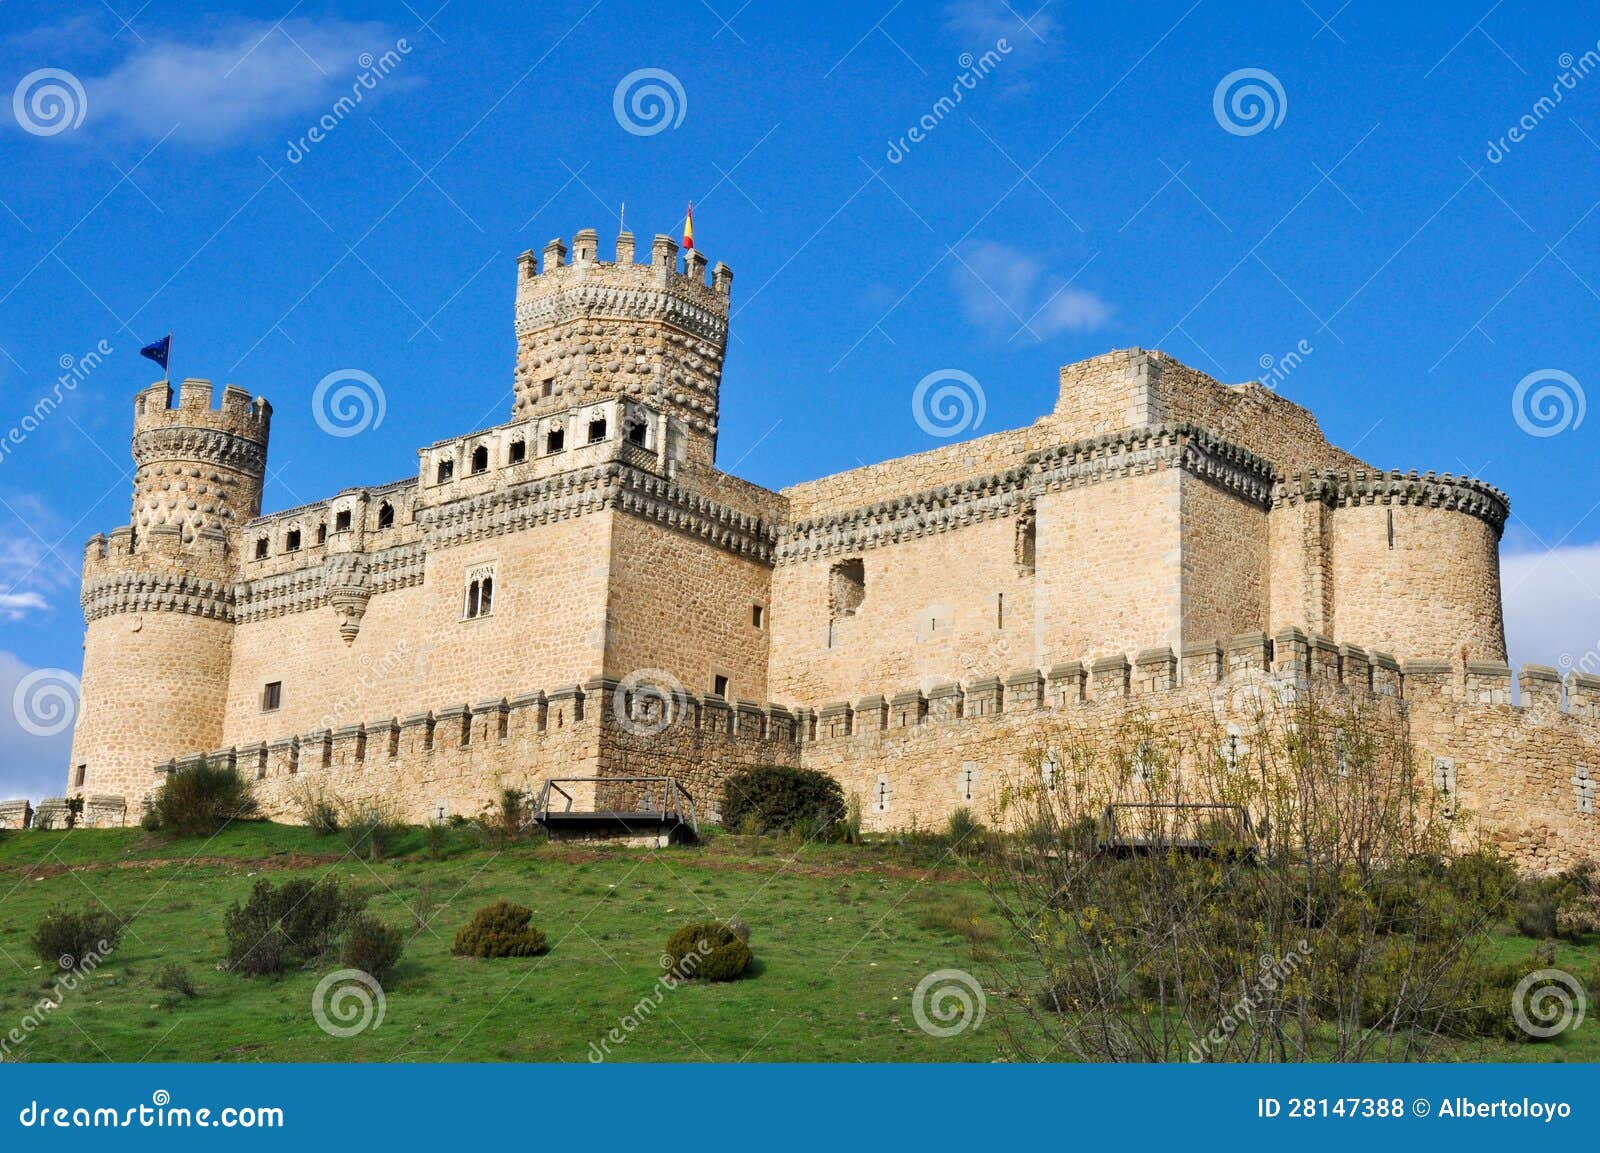 castle of manzanares el real, madrid, spain